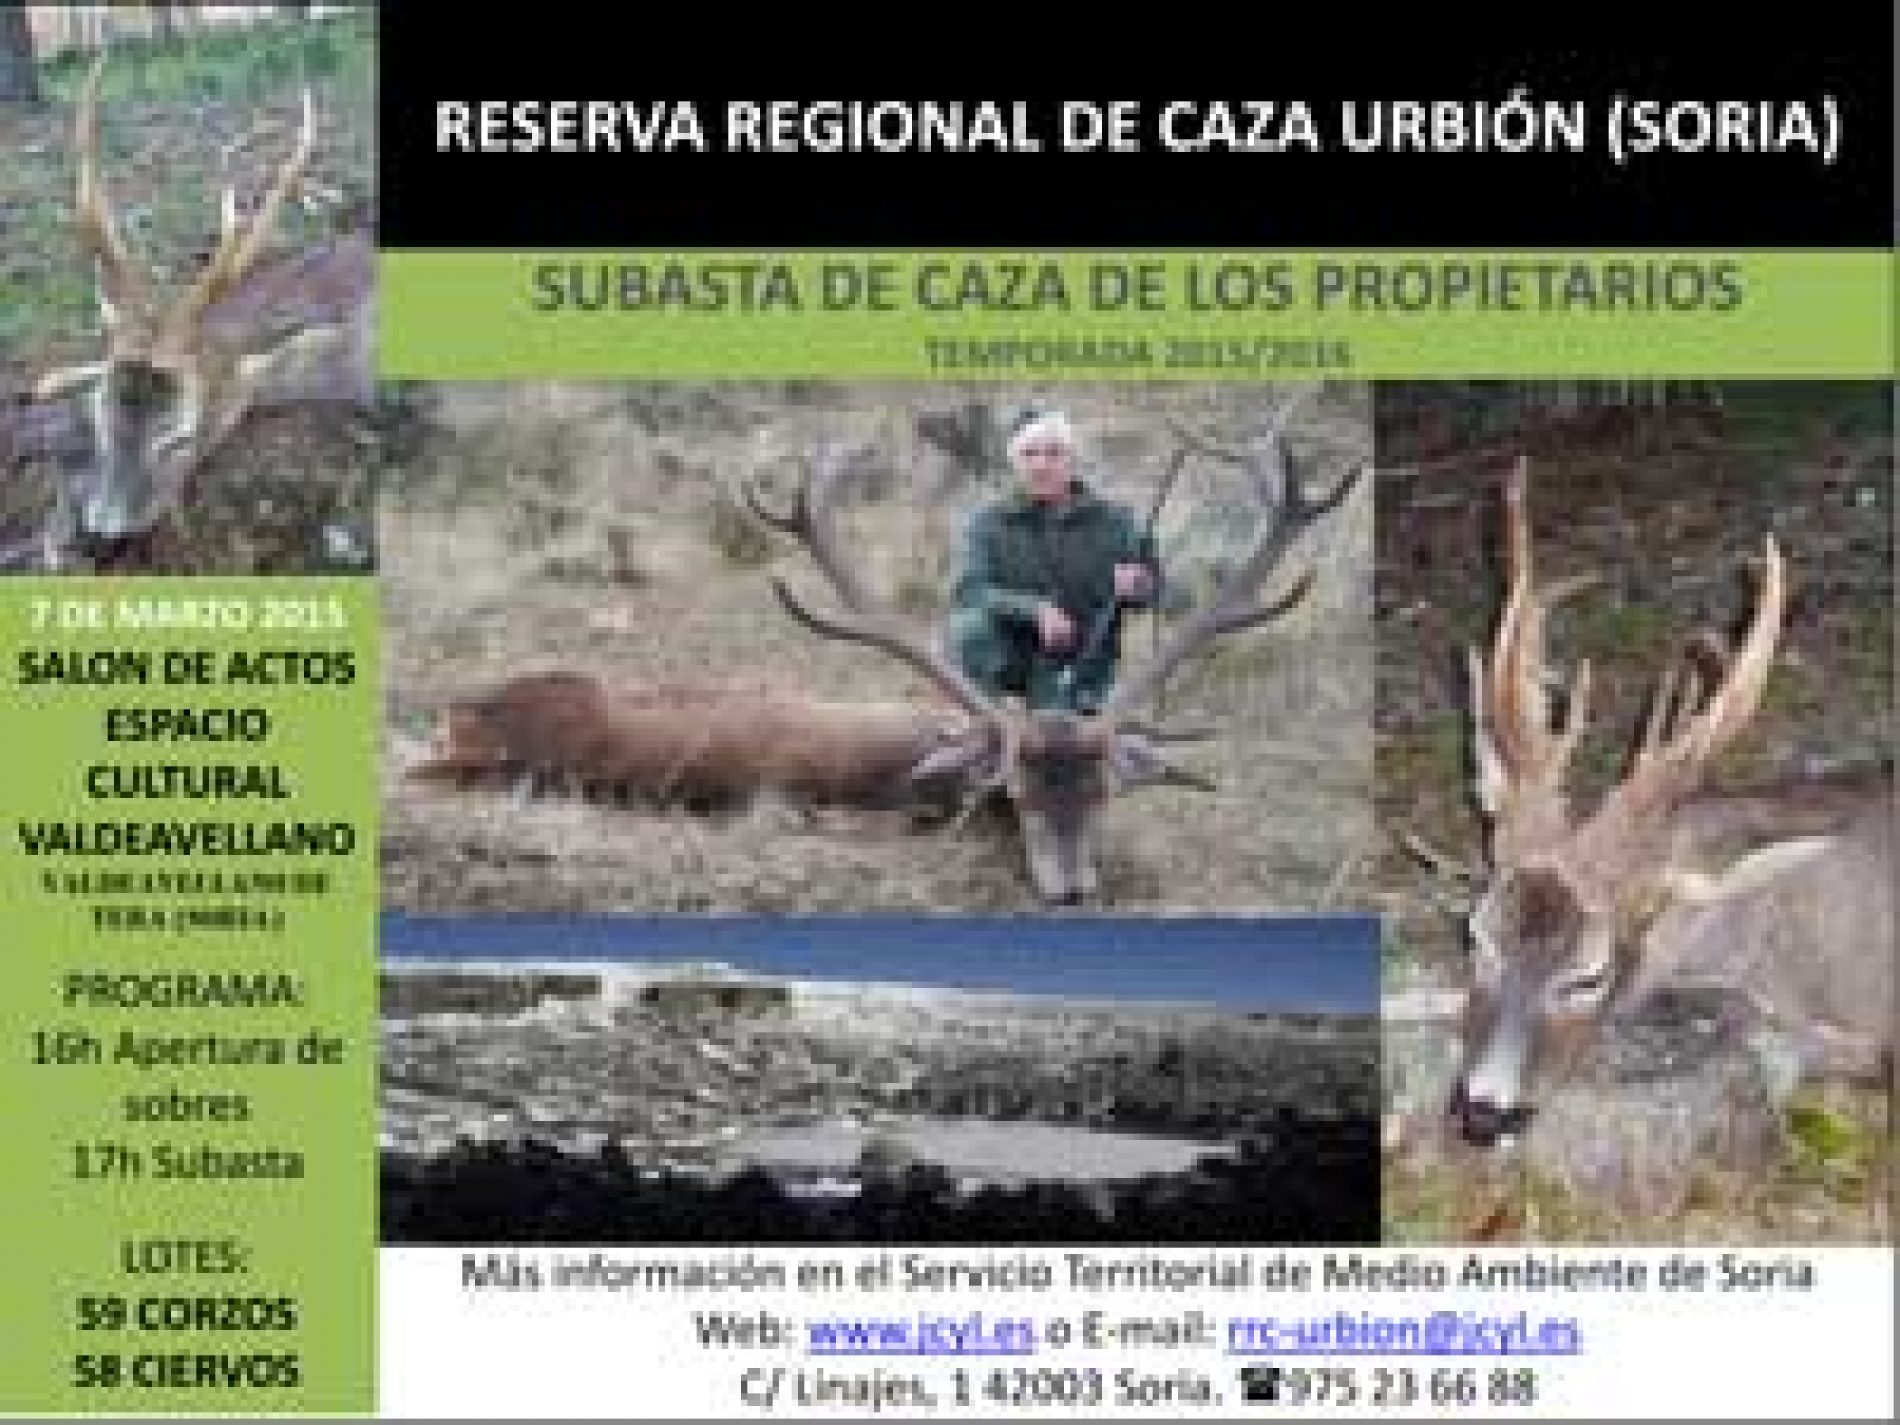 Subasta de 117 piezas de caza en la Reserva de Caza de Urbión